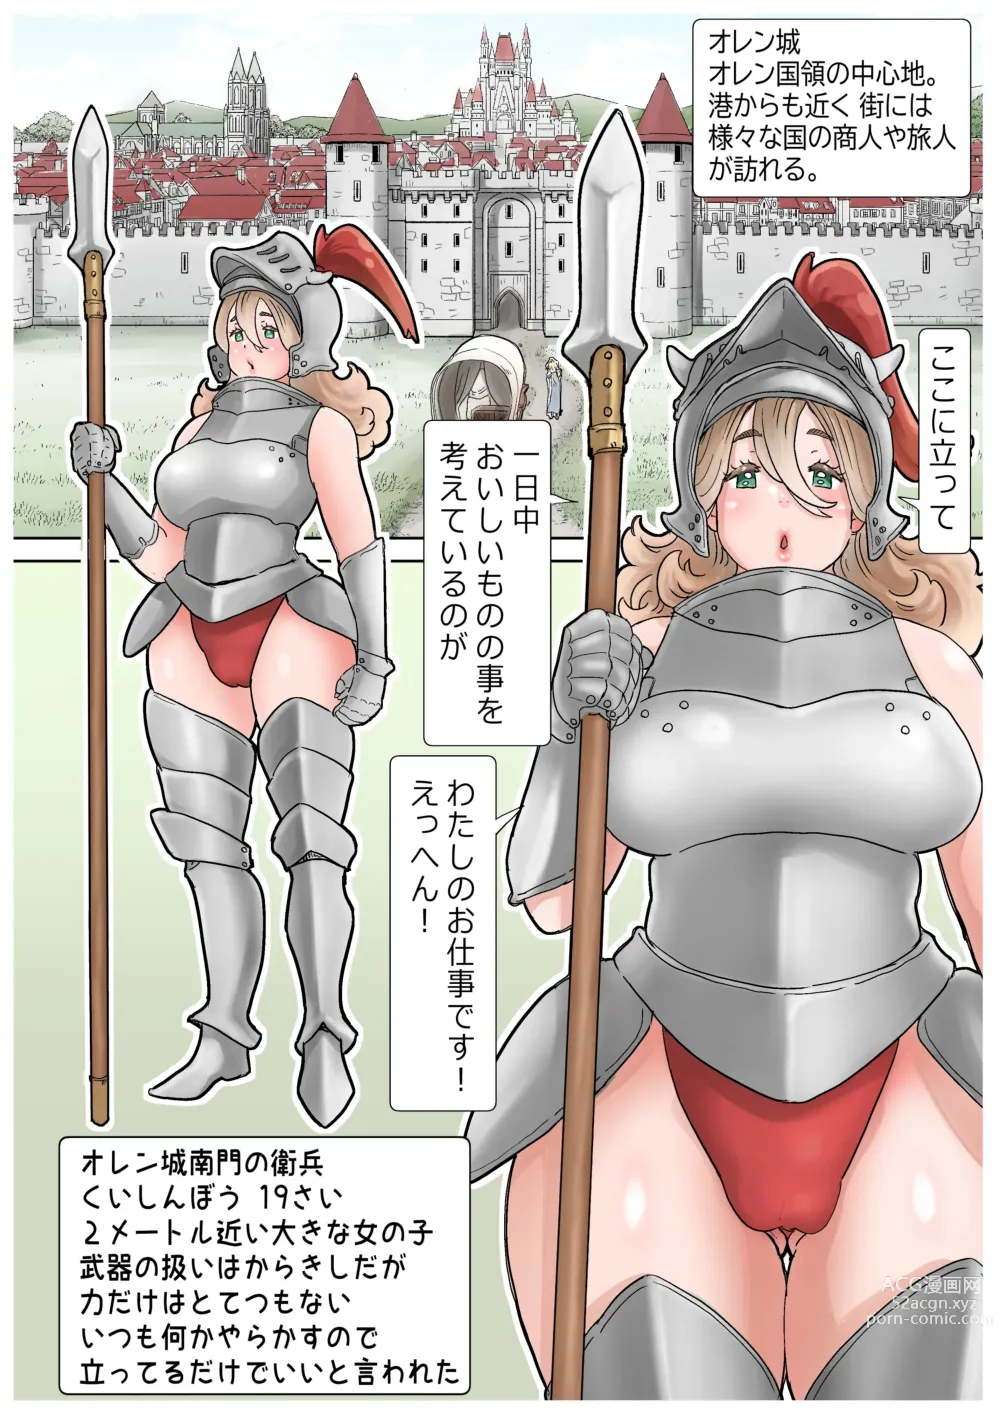 Page 10 of doujinshi RPG girls ❤︎ [NPC kan no shou] 1